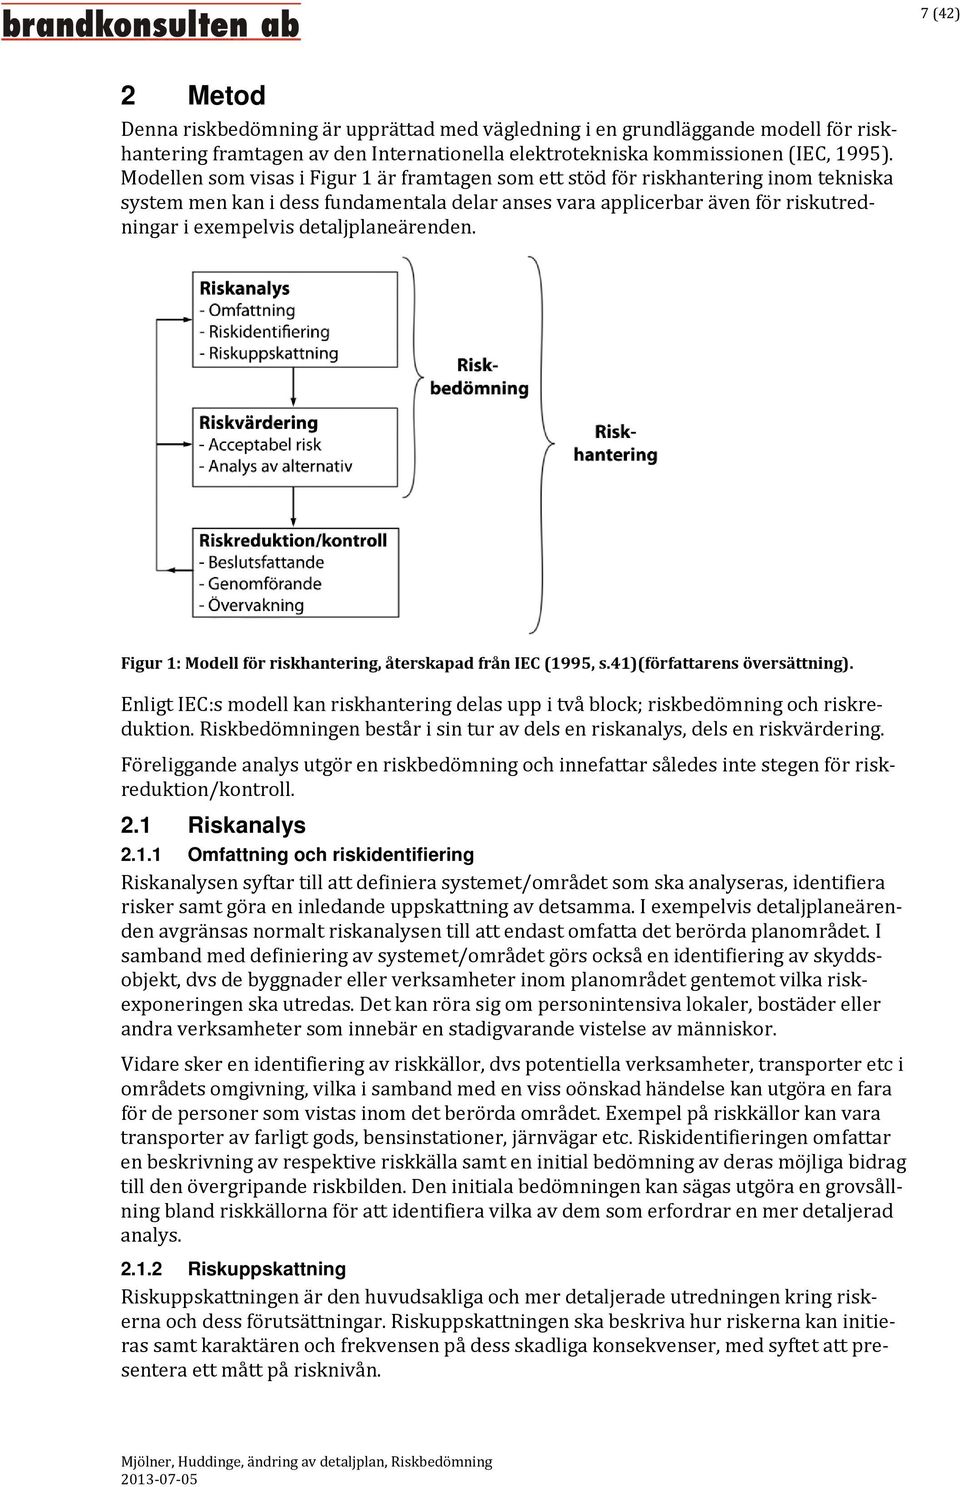 detaljplaneärenden. Figur 1: Modell för riskhantering, återskapad från IEC (1995, s.41)(författarens översättning).